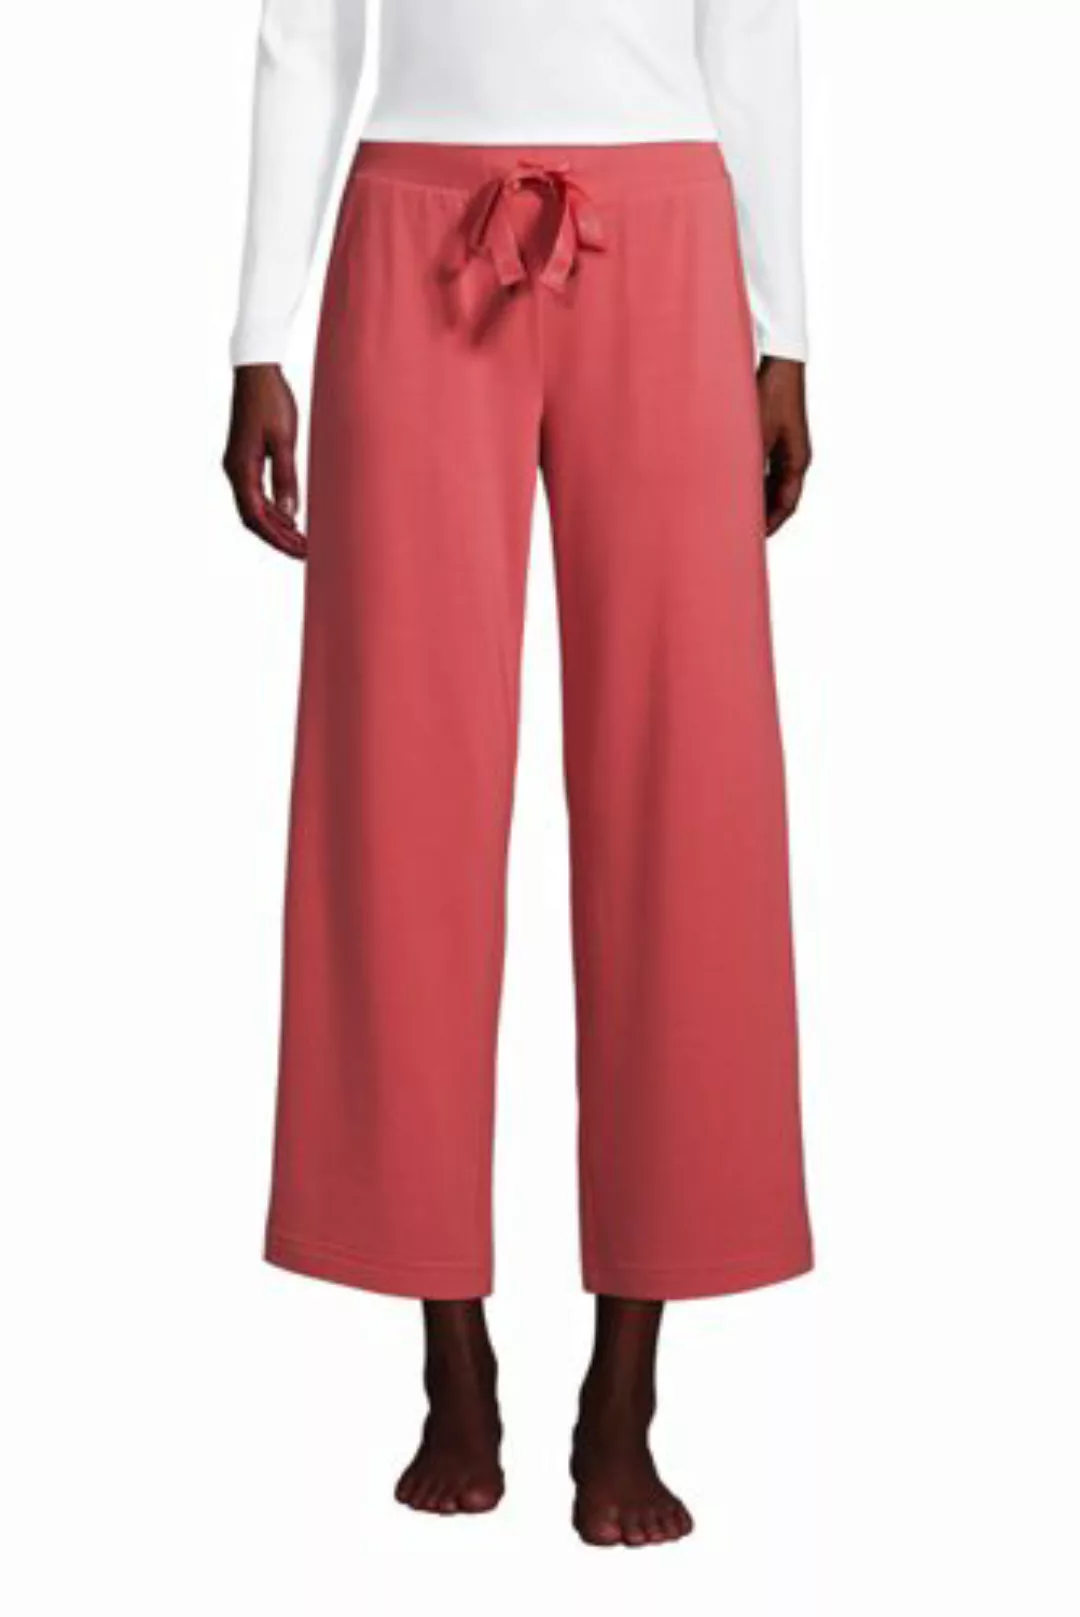 Weite Jersey Pyjama-Hose in 7/8-Länge in Petite-Größe, Damen, Größe: M Peti günstig online kaufen